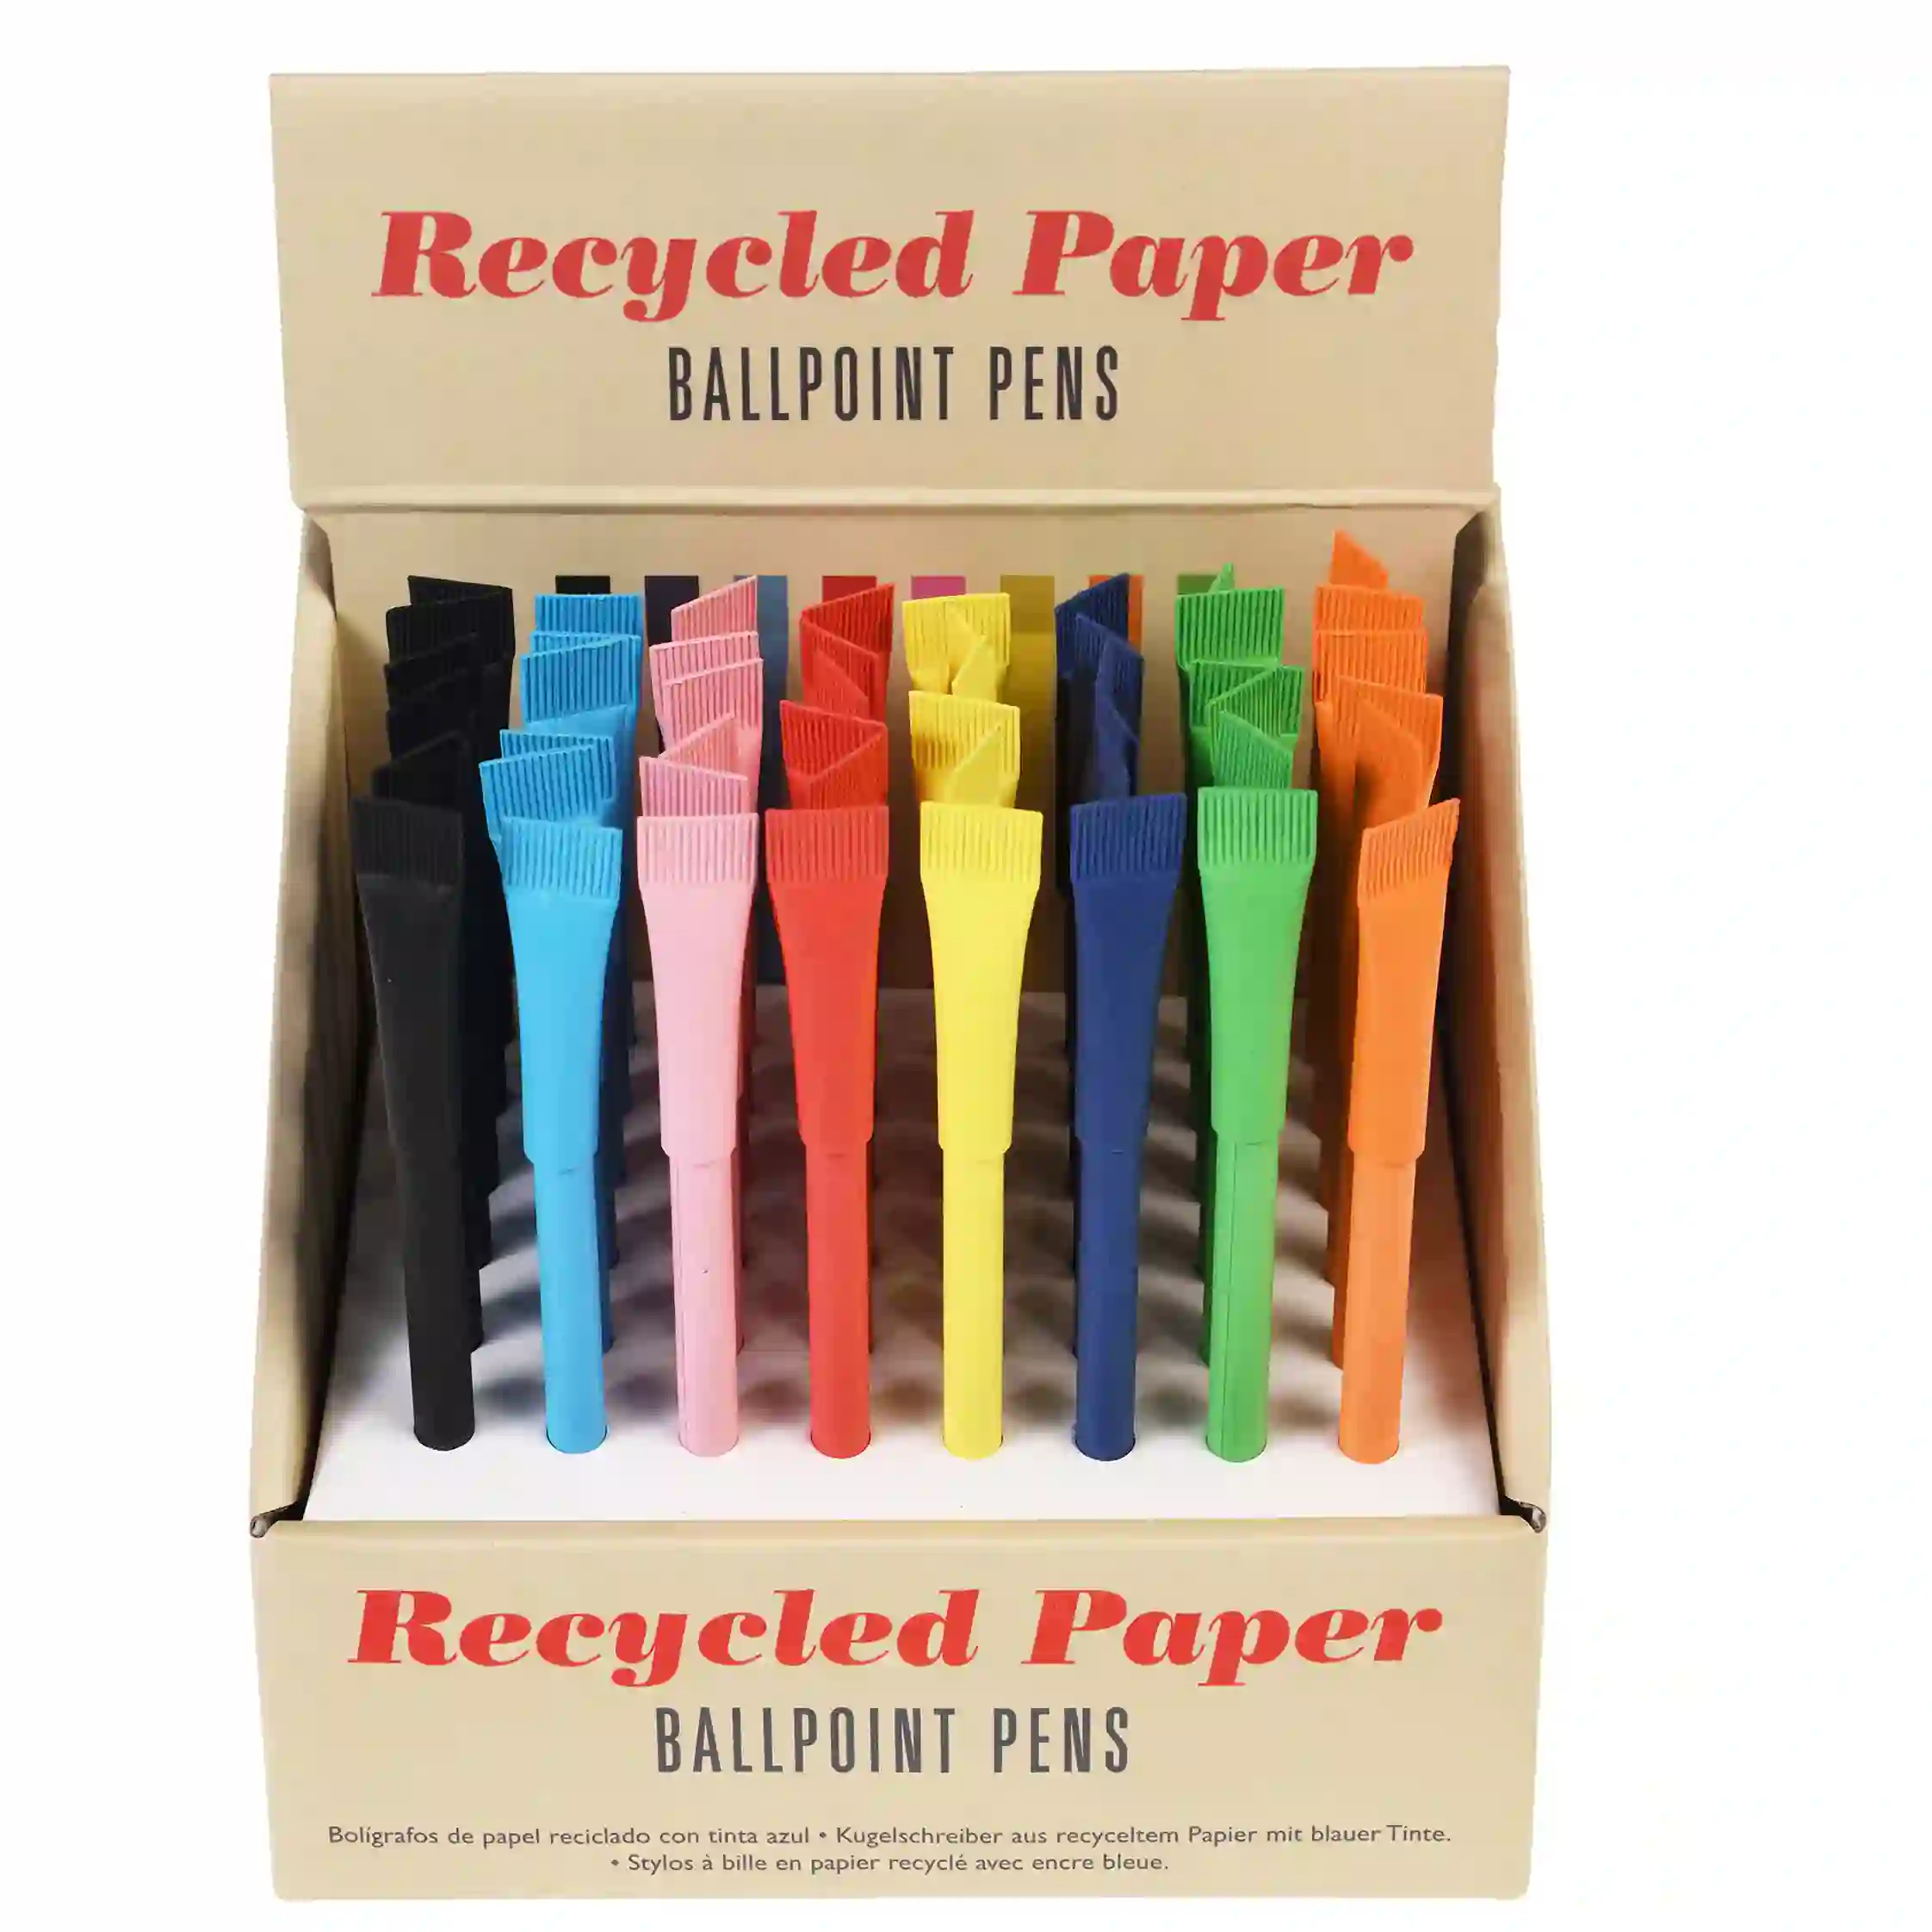 bolígrafo de papel reciclado en colores surtidos